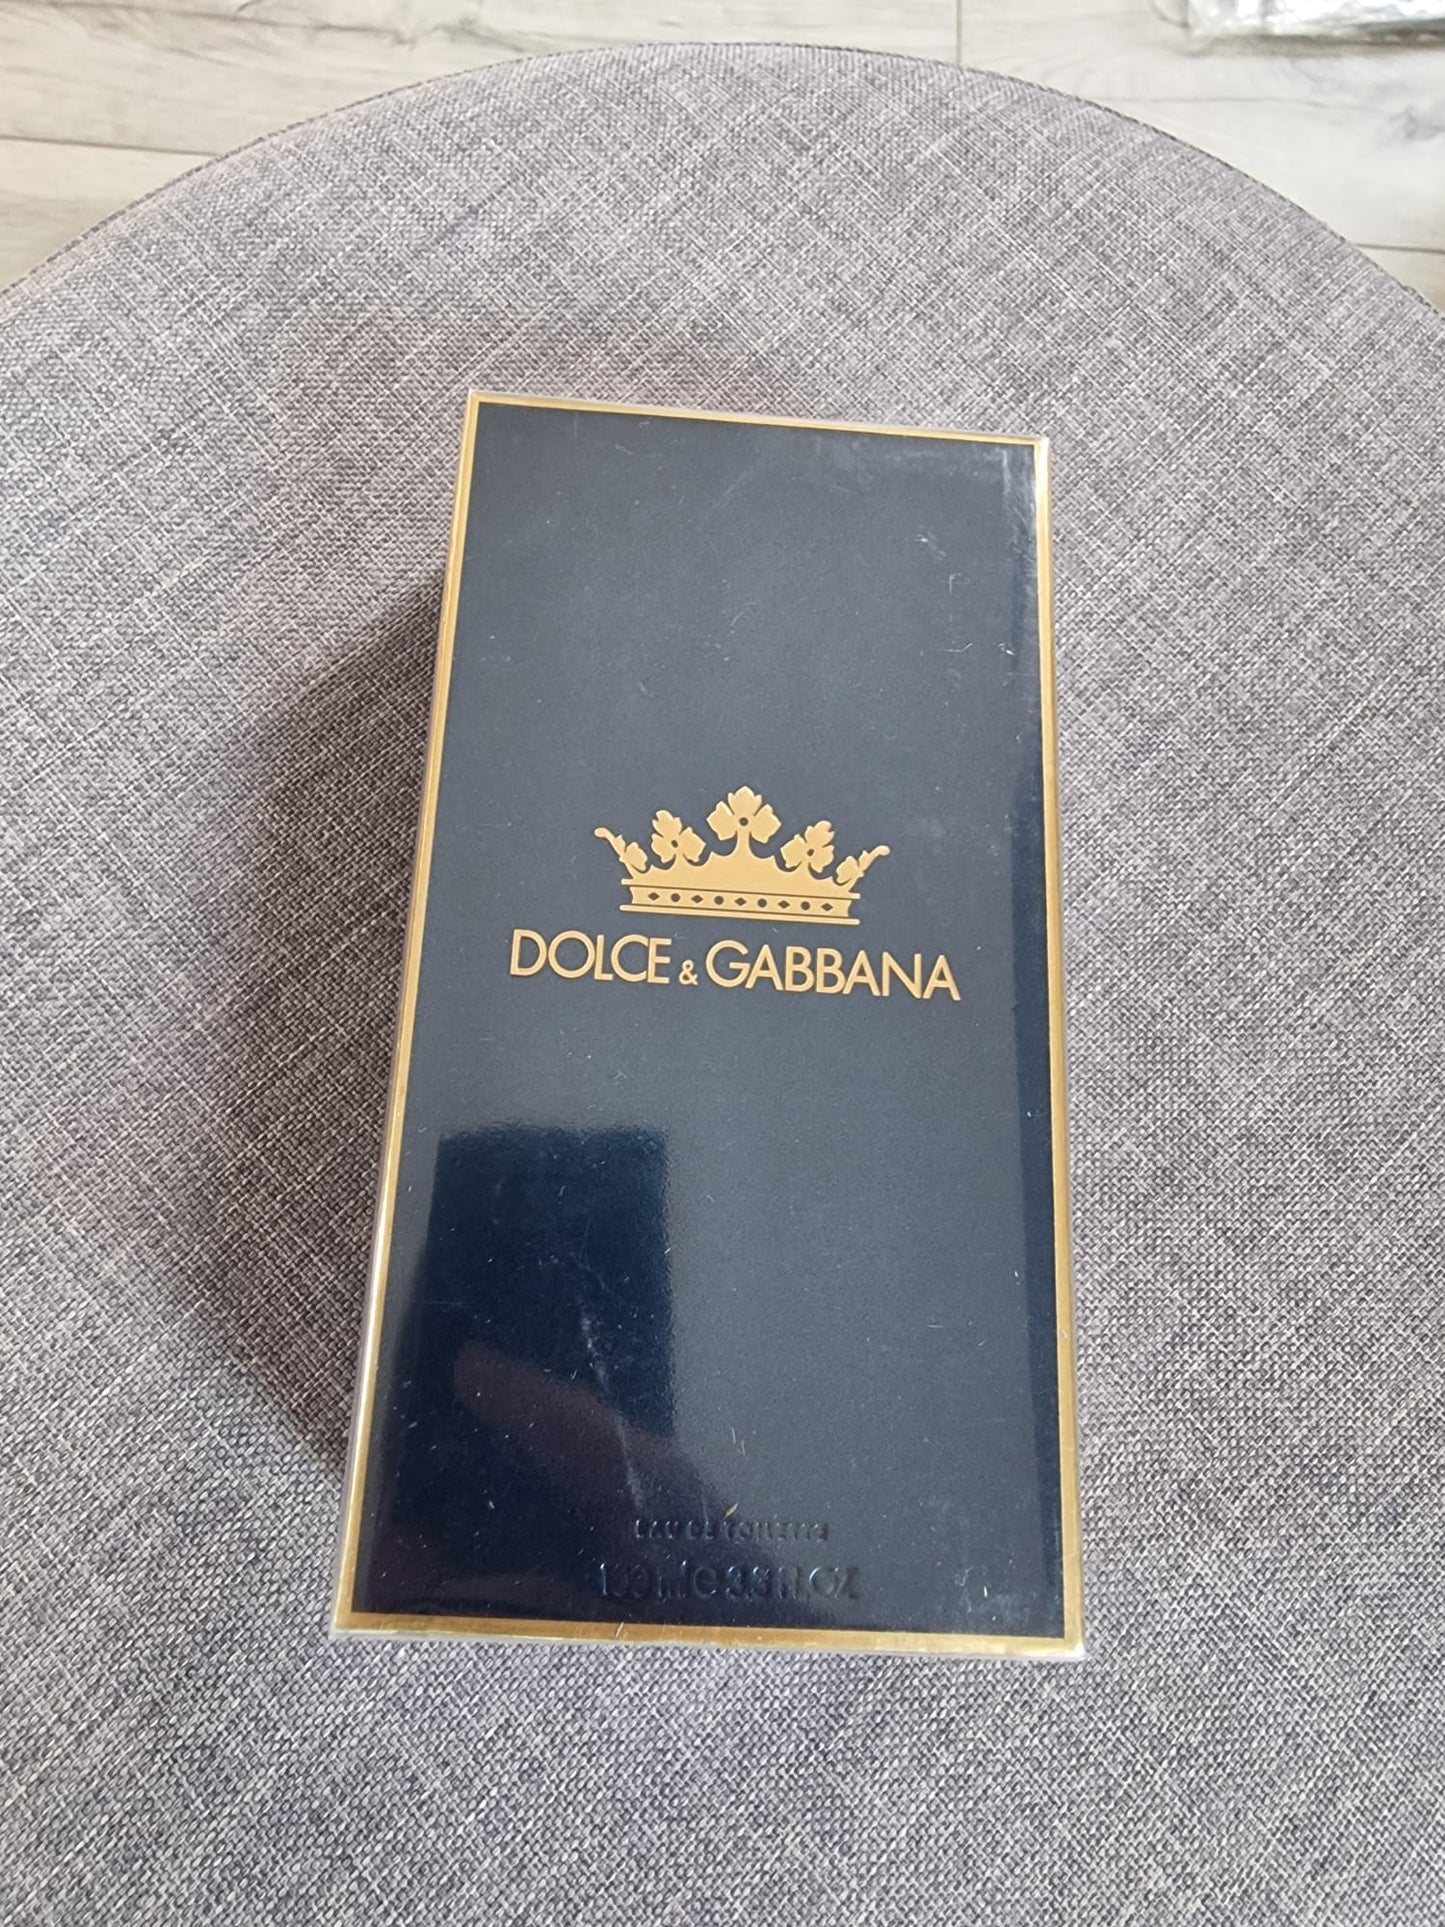 Dolce Gabanna parfem